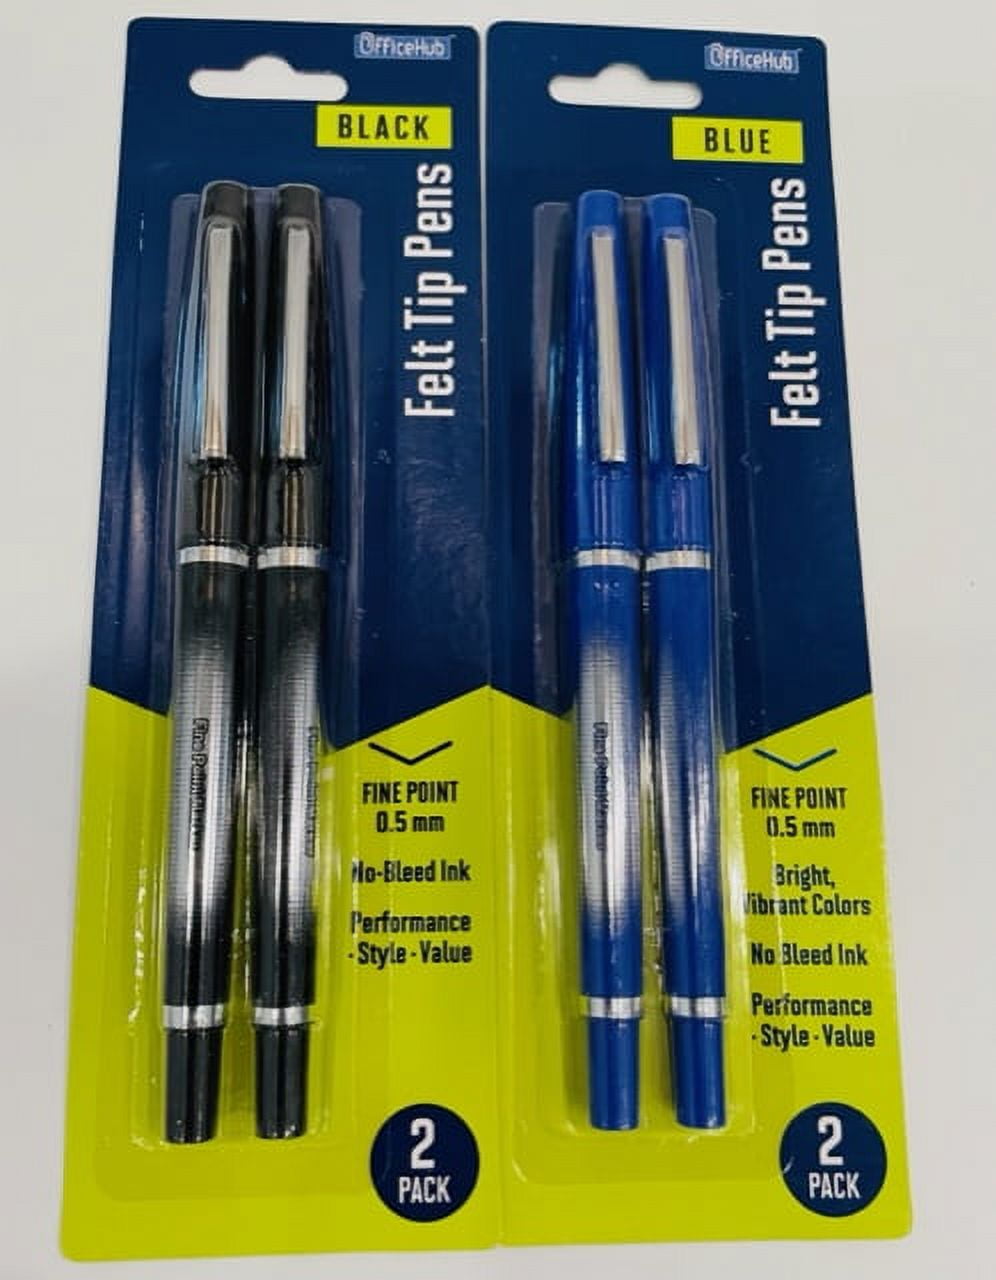 INC Optimus Fine Point Pen Review 